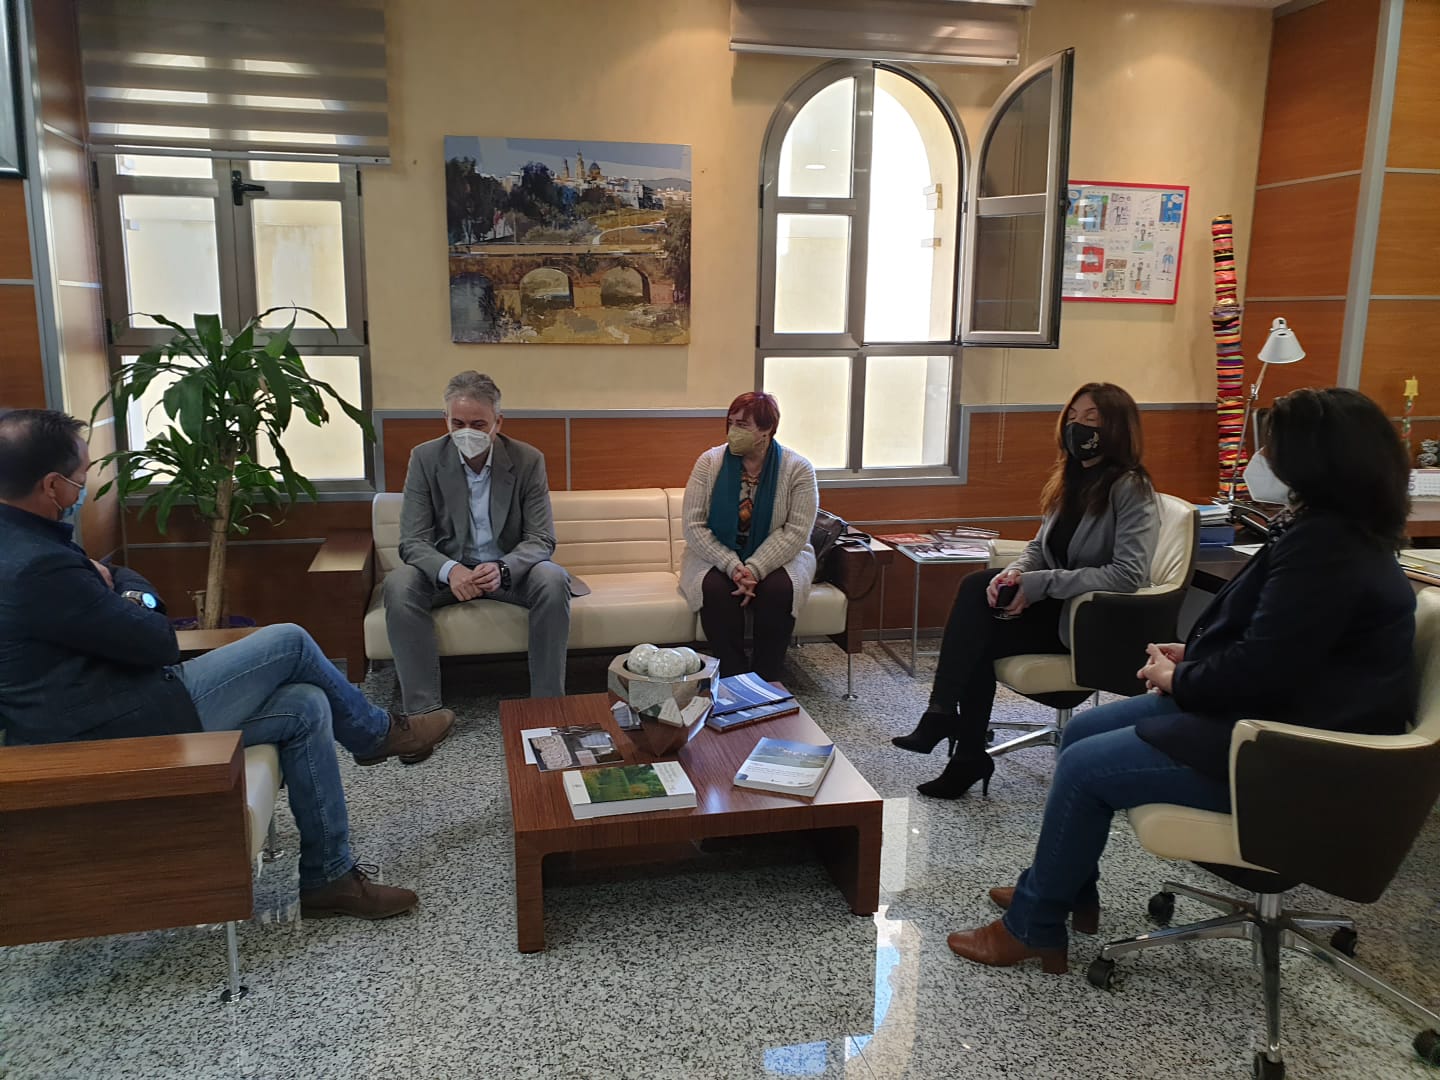 L'alcalde de Riba-roja es reuneix amb el vicepresident del Consell per a analitzar les polítiques d'habitatge en el municipi